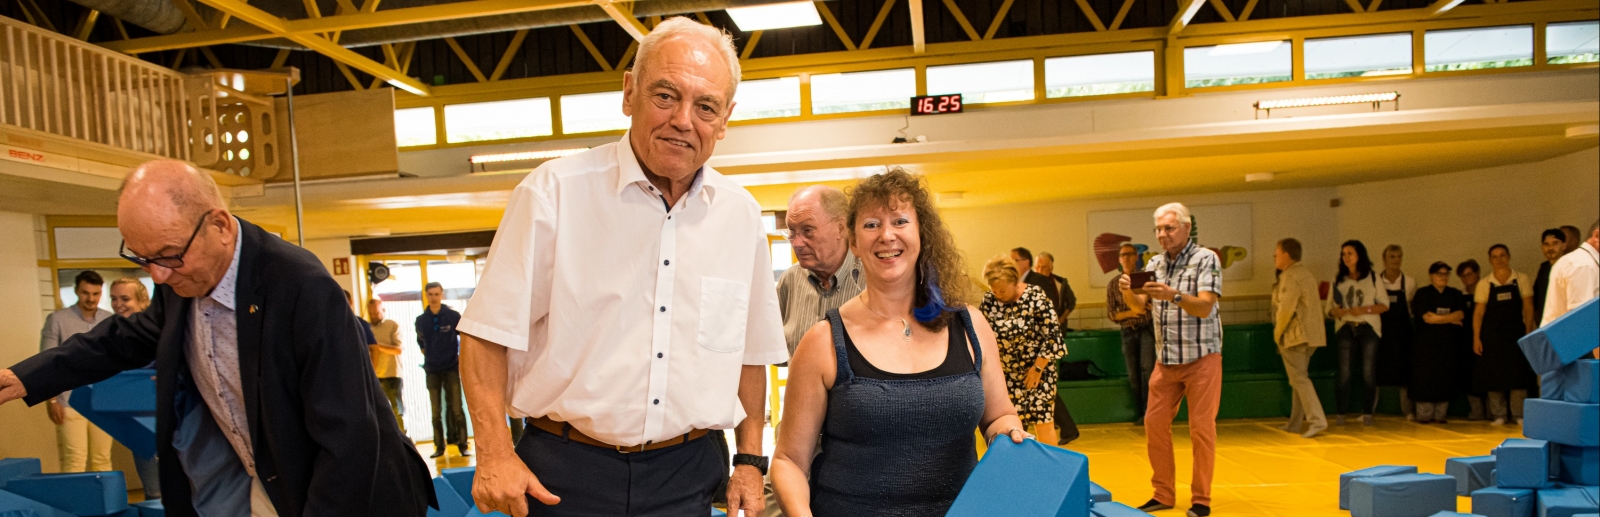 Staatssekretärin Milz mit dem Präsidenten des Landessportbundes NRW, Herrn Walter Schneeloch, an einer Schnitzelgrube gefüllt mit großen, blauen, gepolsterten Quadern.